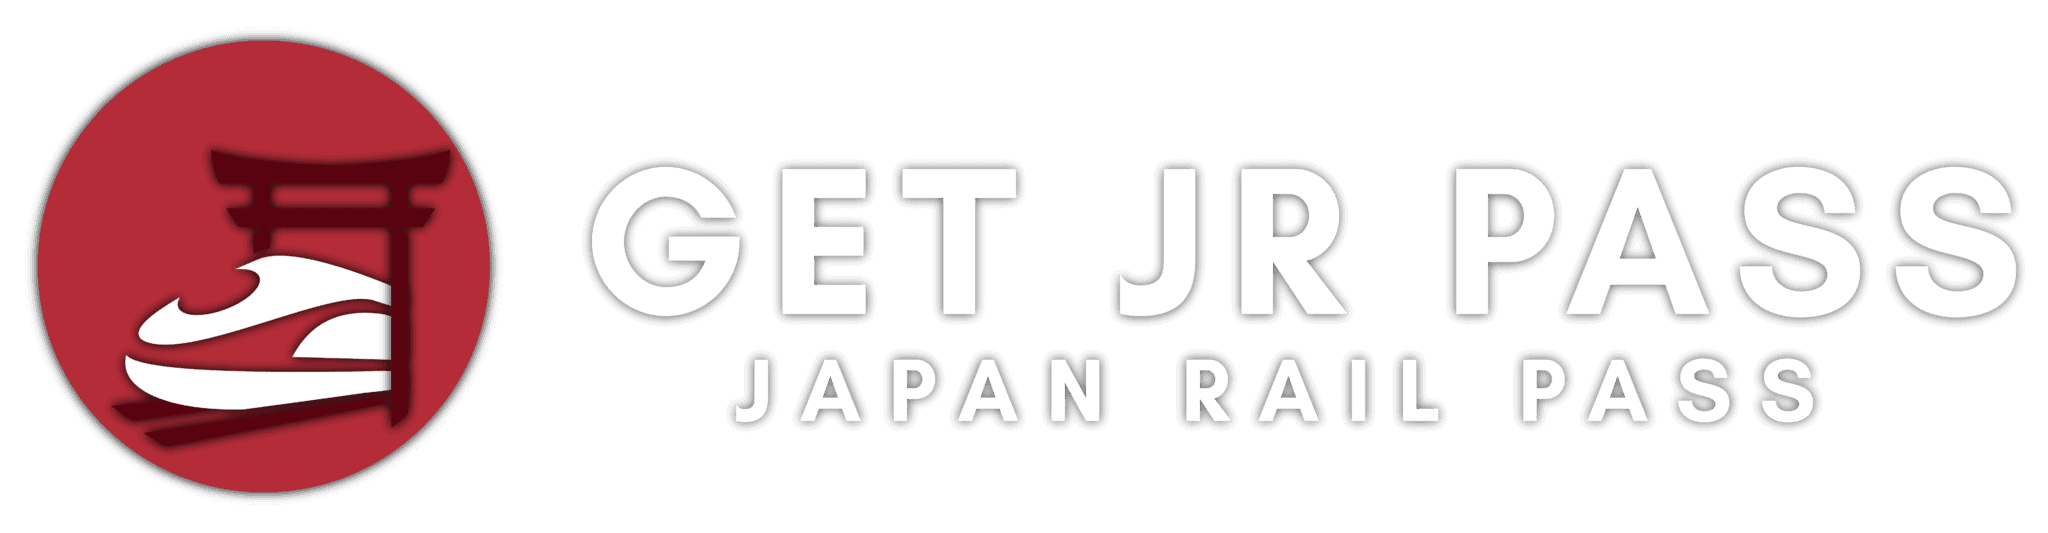 getjrpass japan rail pass